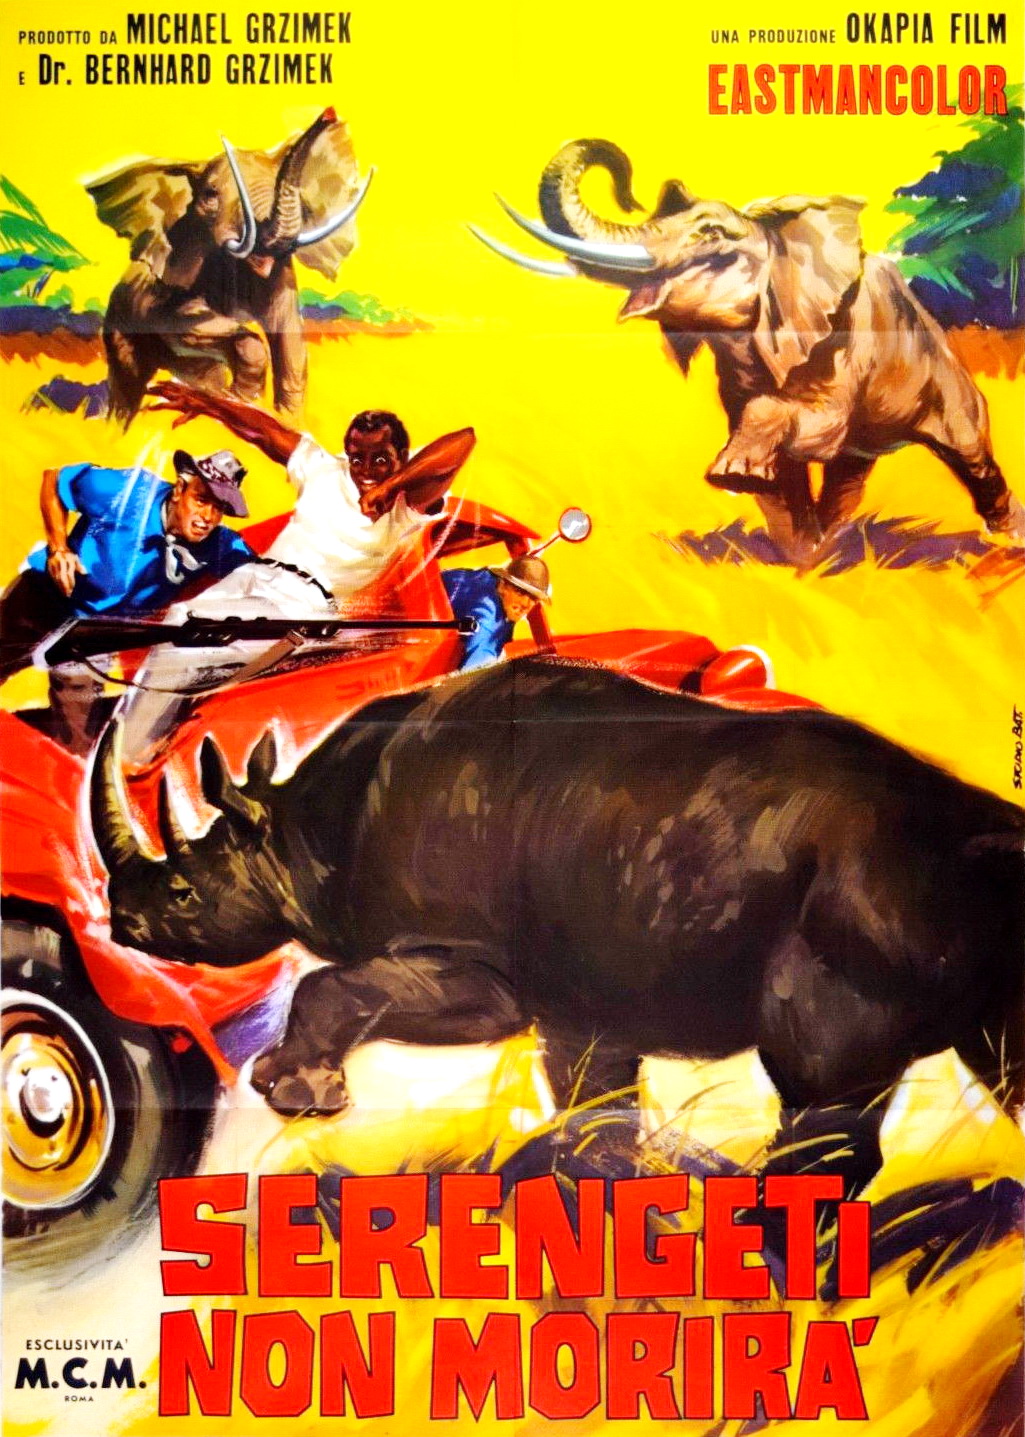 Serengeti (1959) Screenshot 5